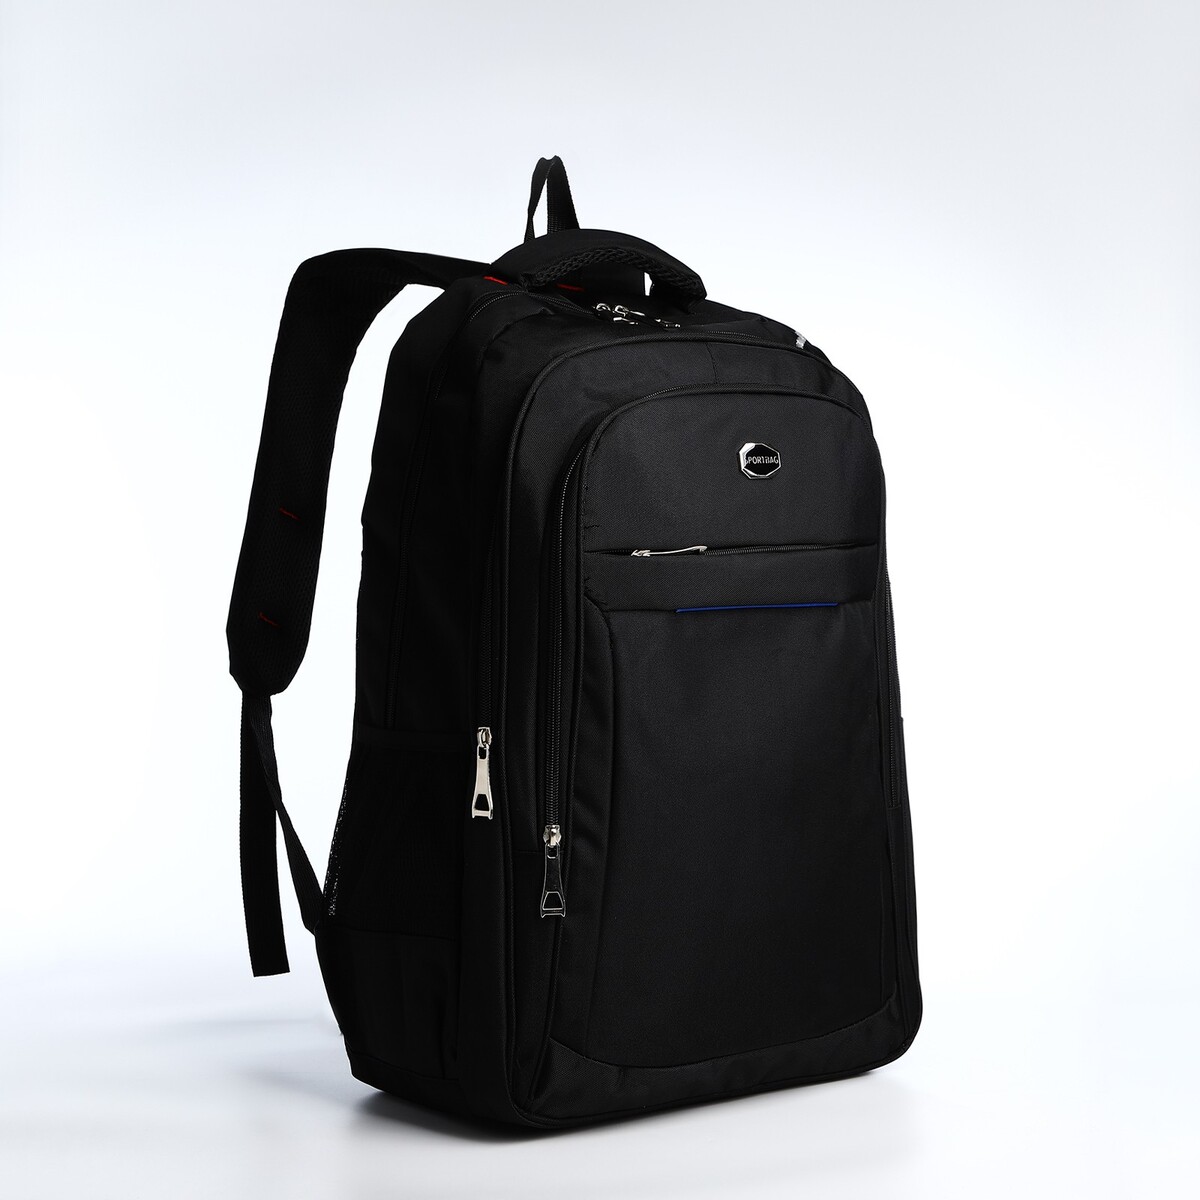 Рюкзак молодежный из текстиля, 2 отдела на молнии, 4 кармана, цвет черный/синий